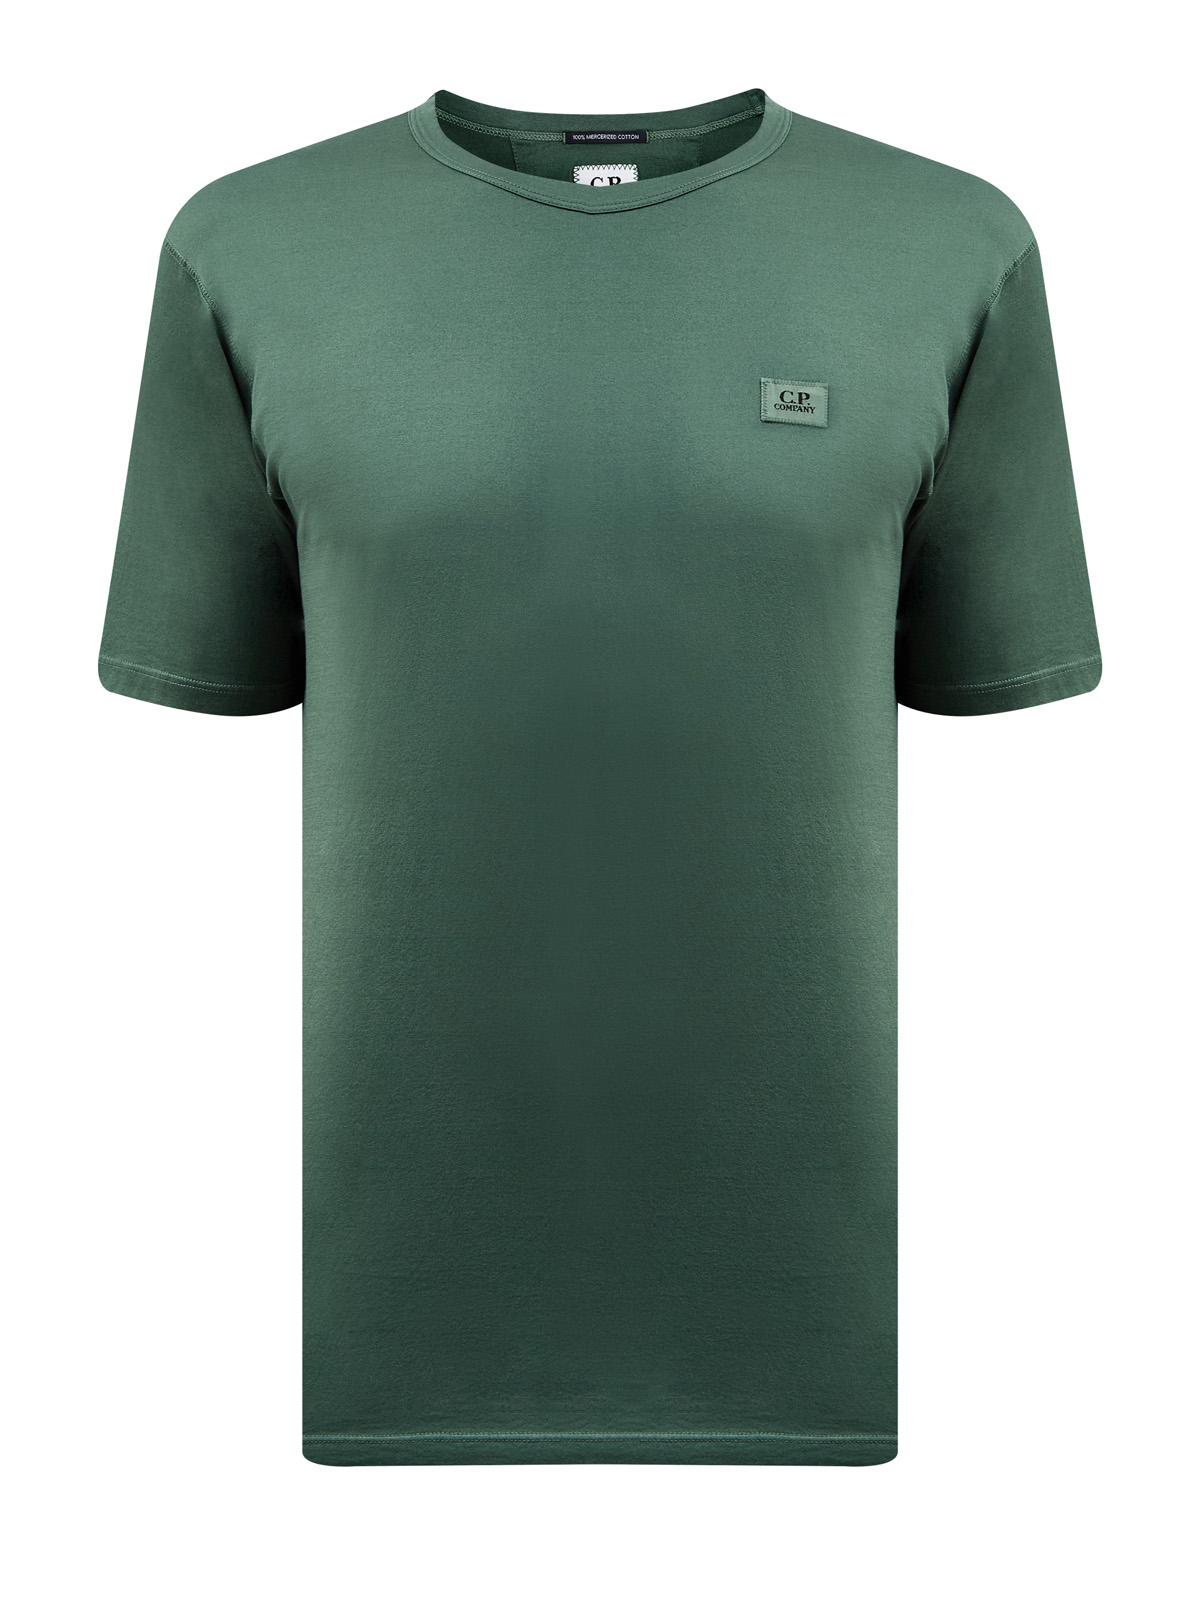 Однотонная футболка из гладкого хлопка джерси с нашивкой C.P.COMPANY, цвет зеленый, размер 48;52;54 - фото 1